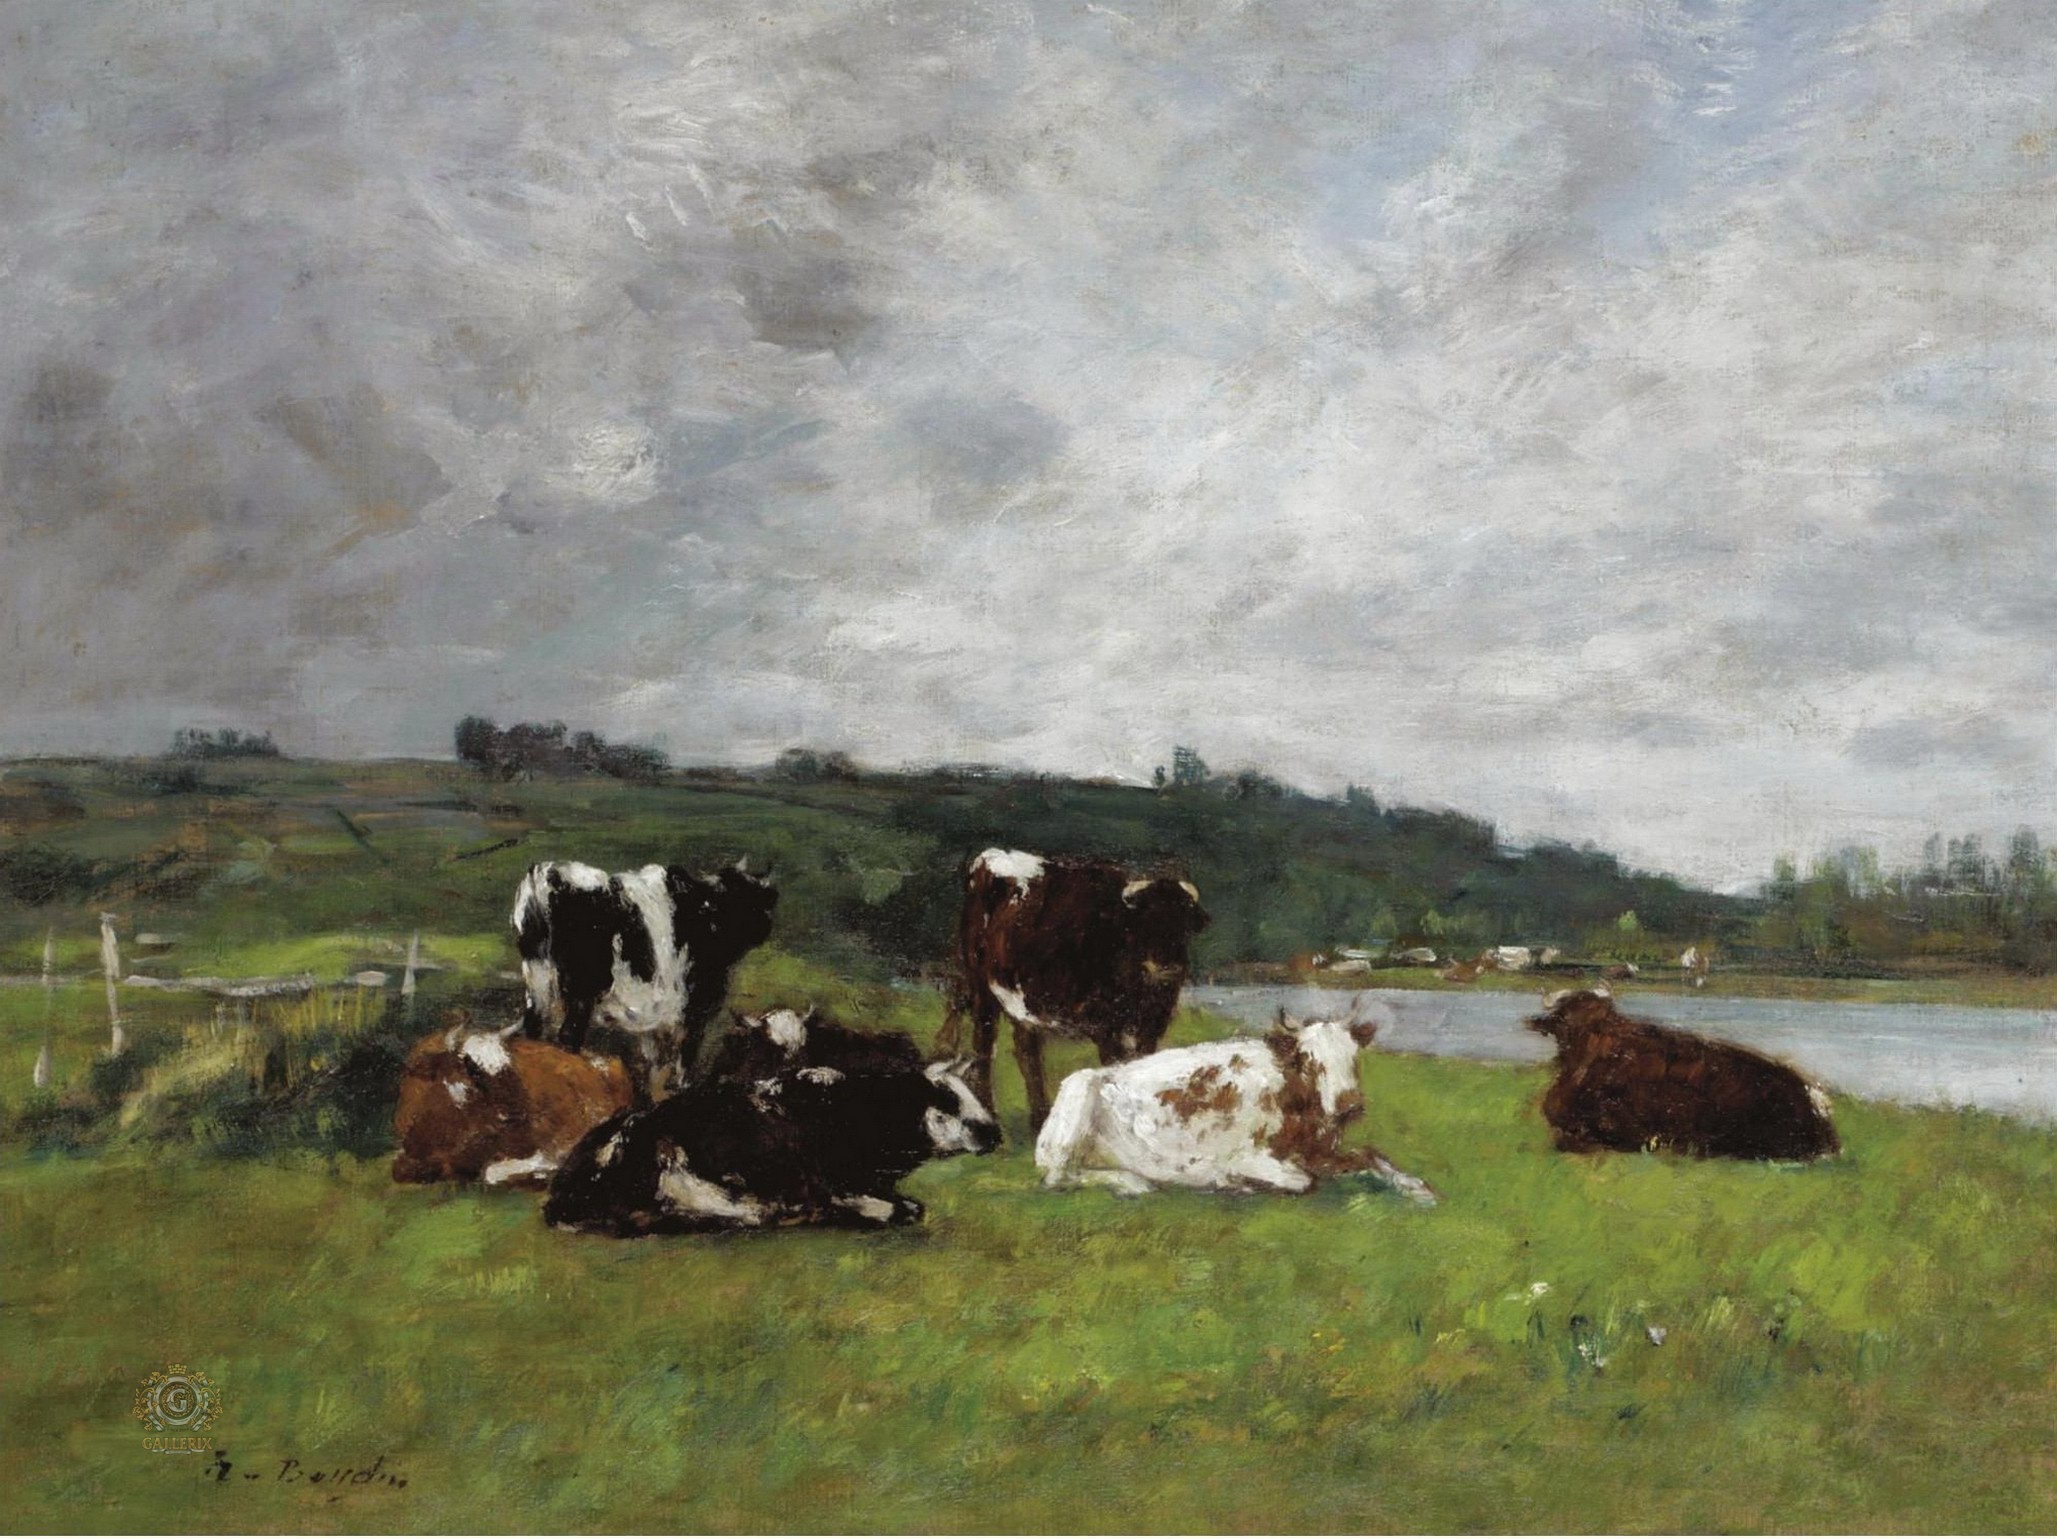 Эжен Буден. "Коровы на пастбище". 1880-1885.